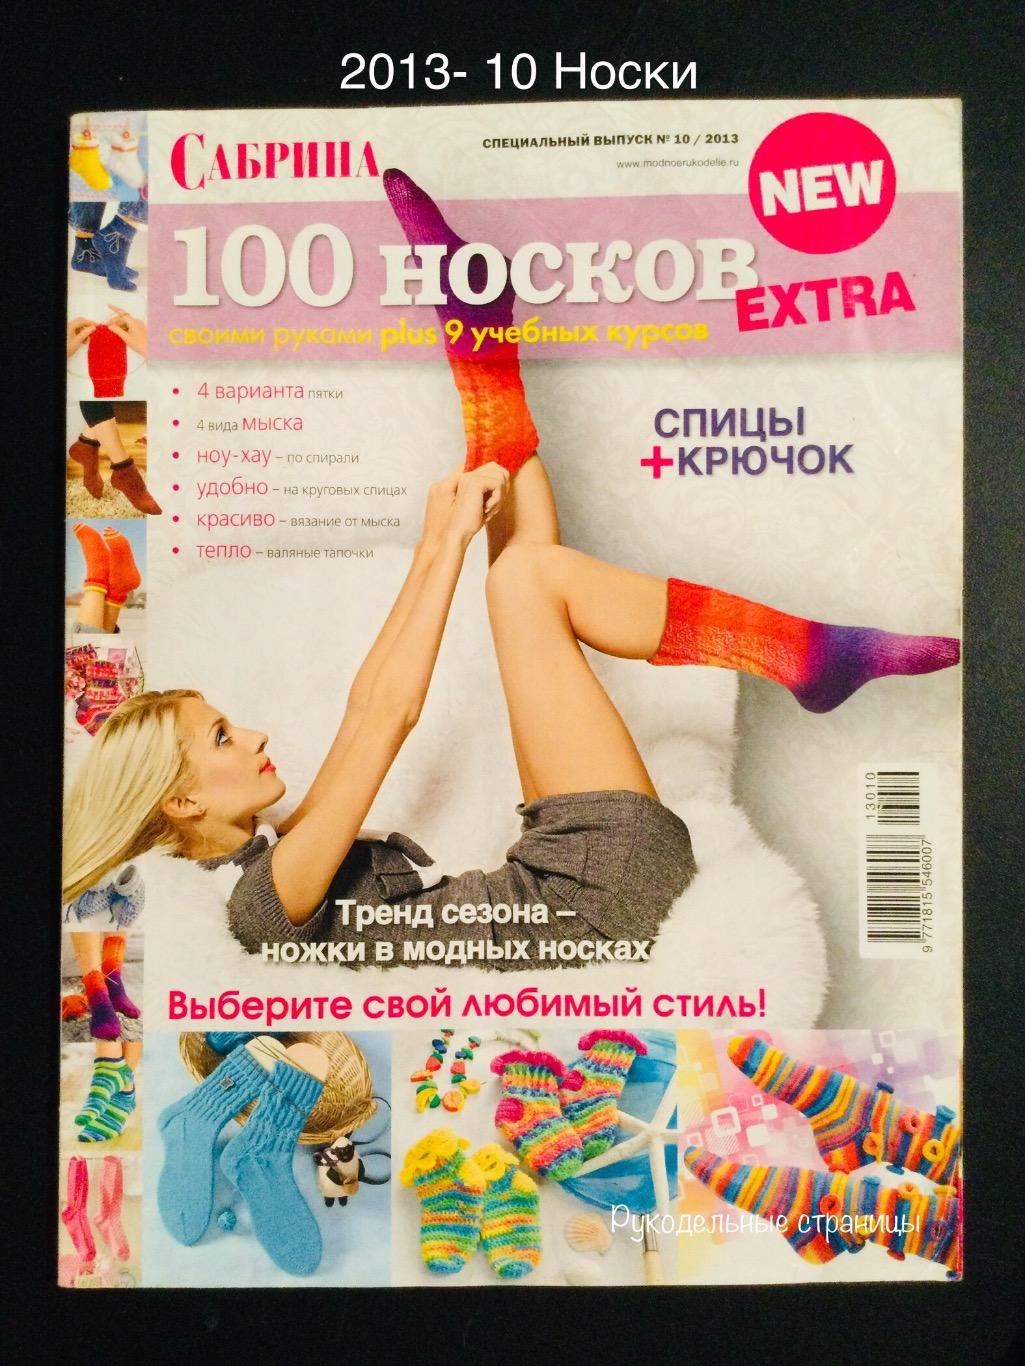 САБРИНА Спецвыпуск 100 Носков 2013- 10